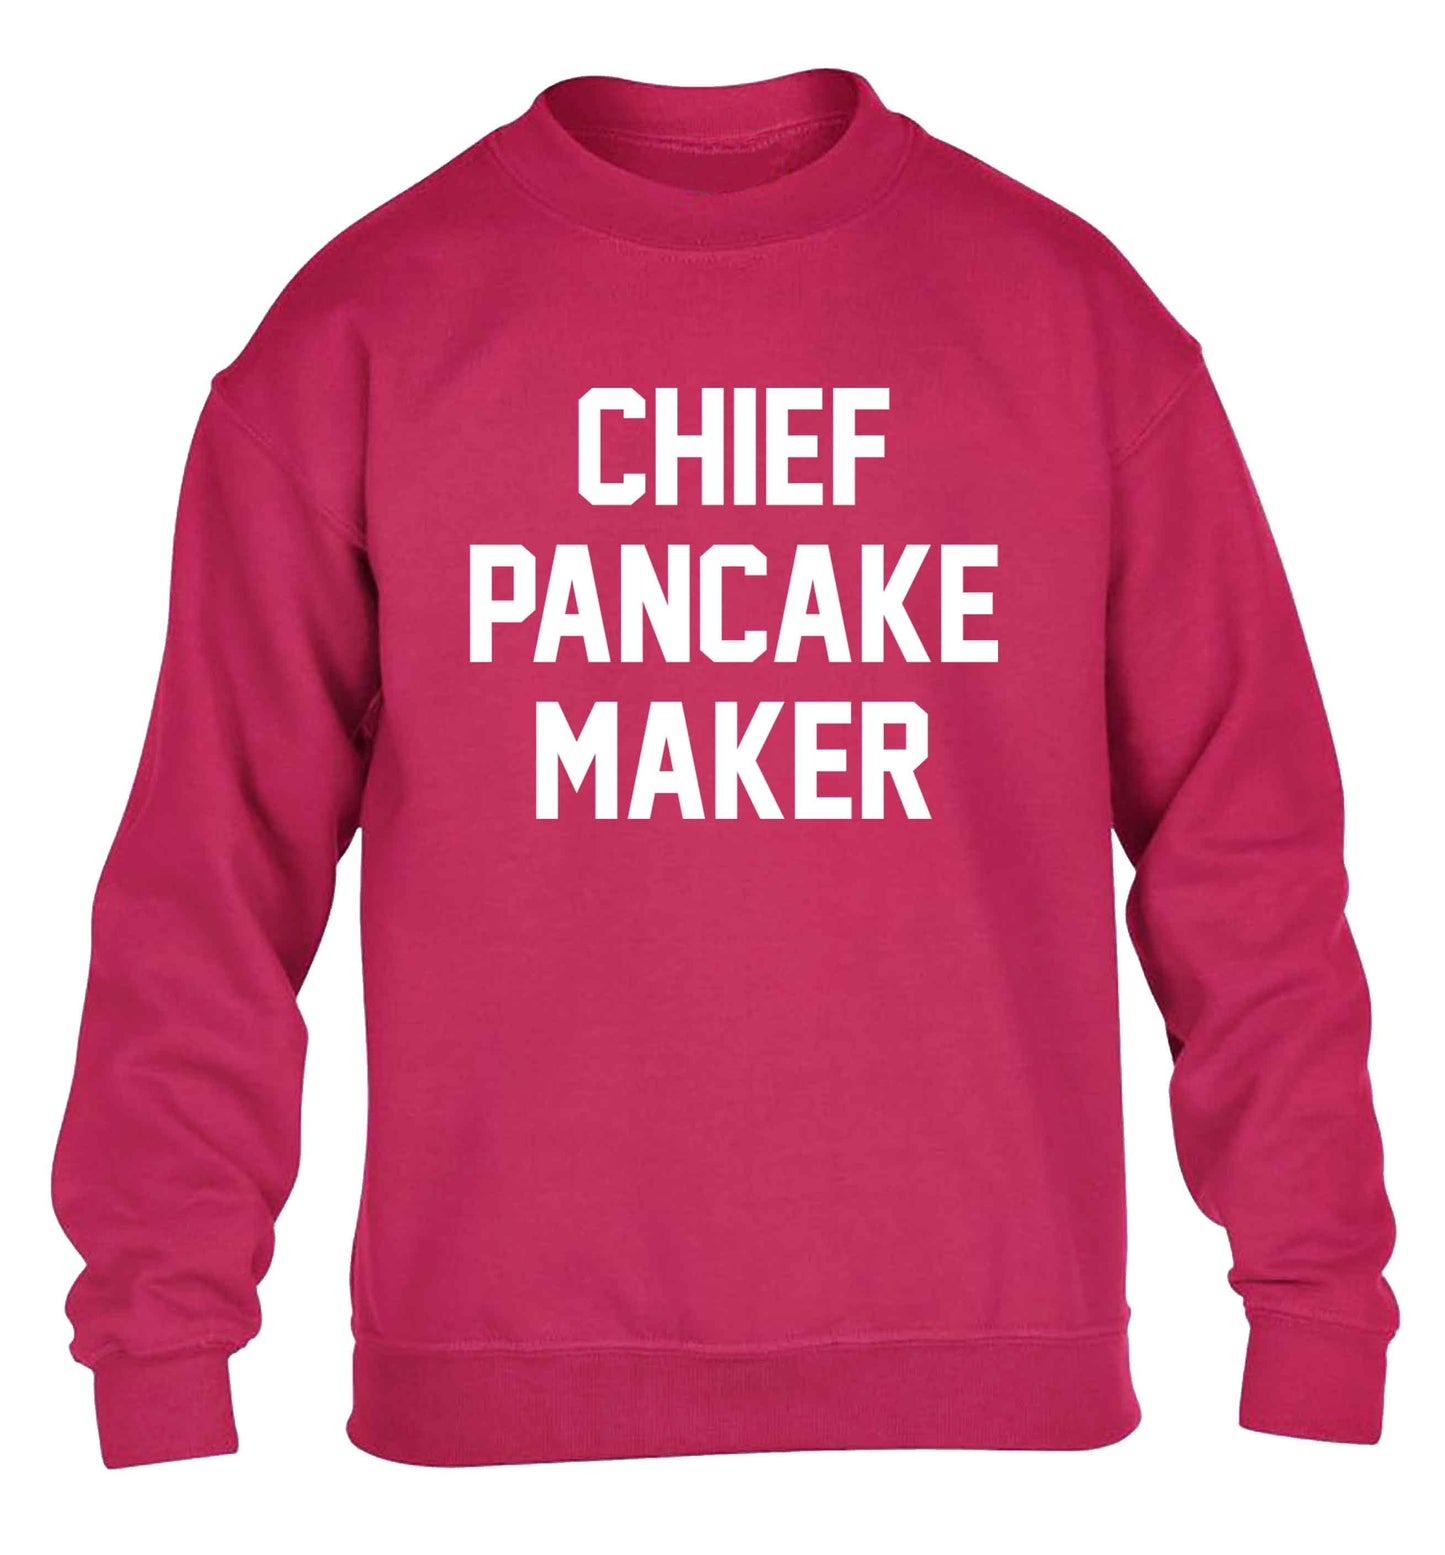 Chief pancake maker children's pink sweater 12-13 Years